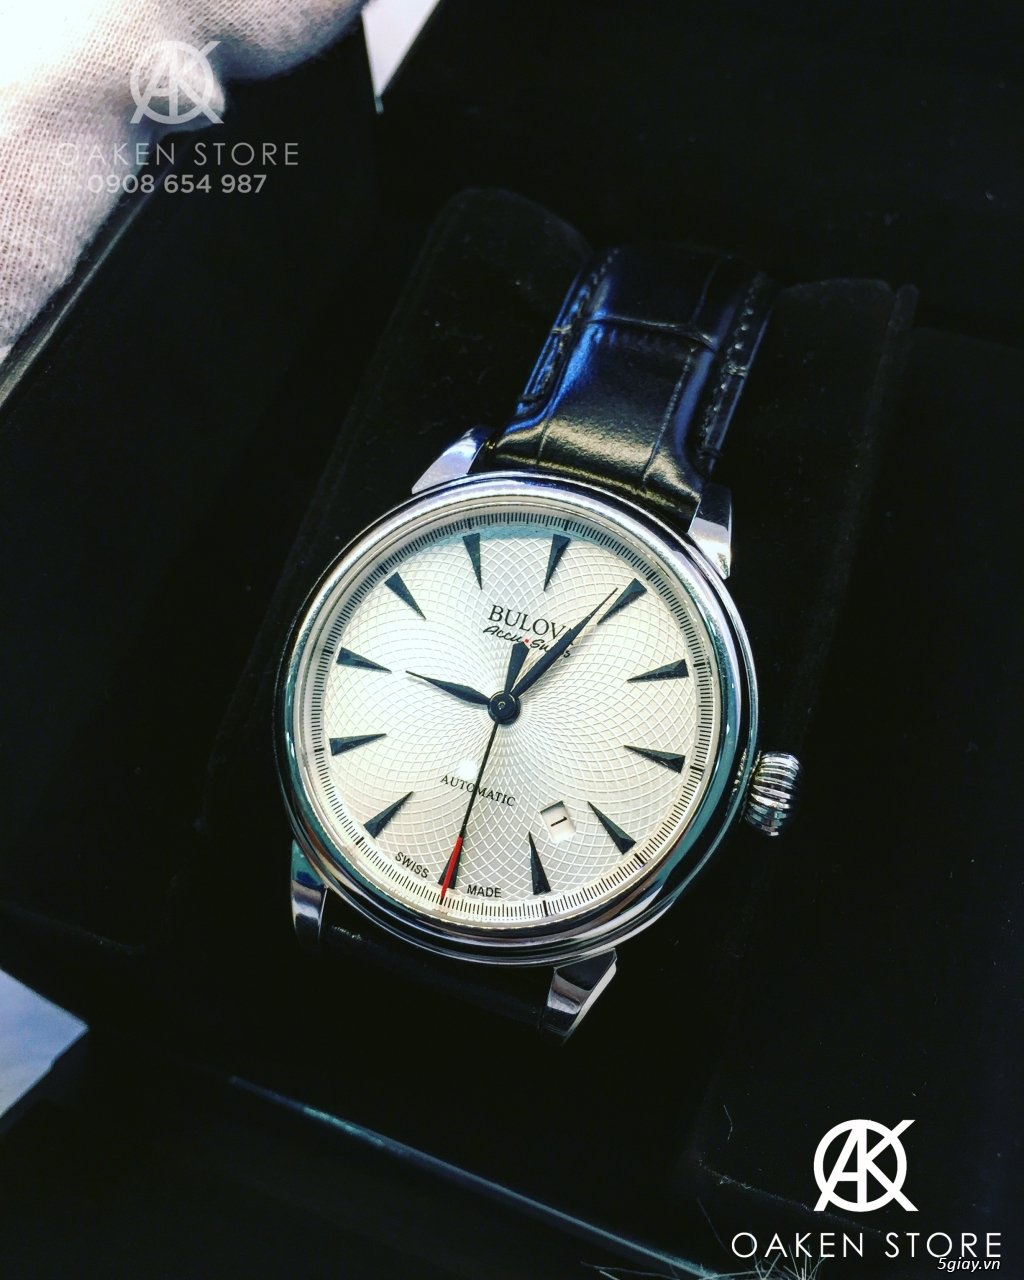 Oaken Store - Đồng hồ chính hãng xách tay giá tốt - 32